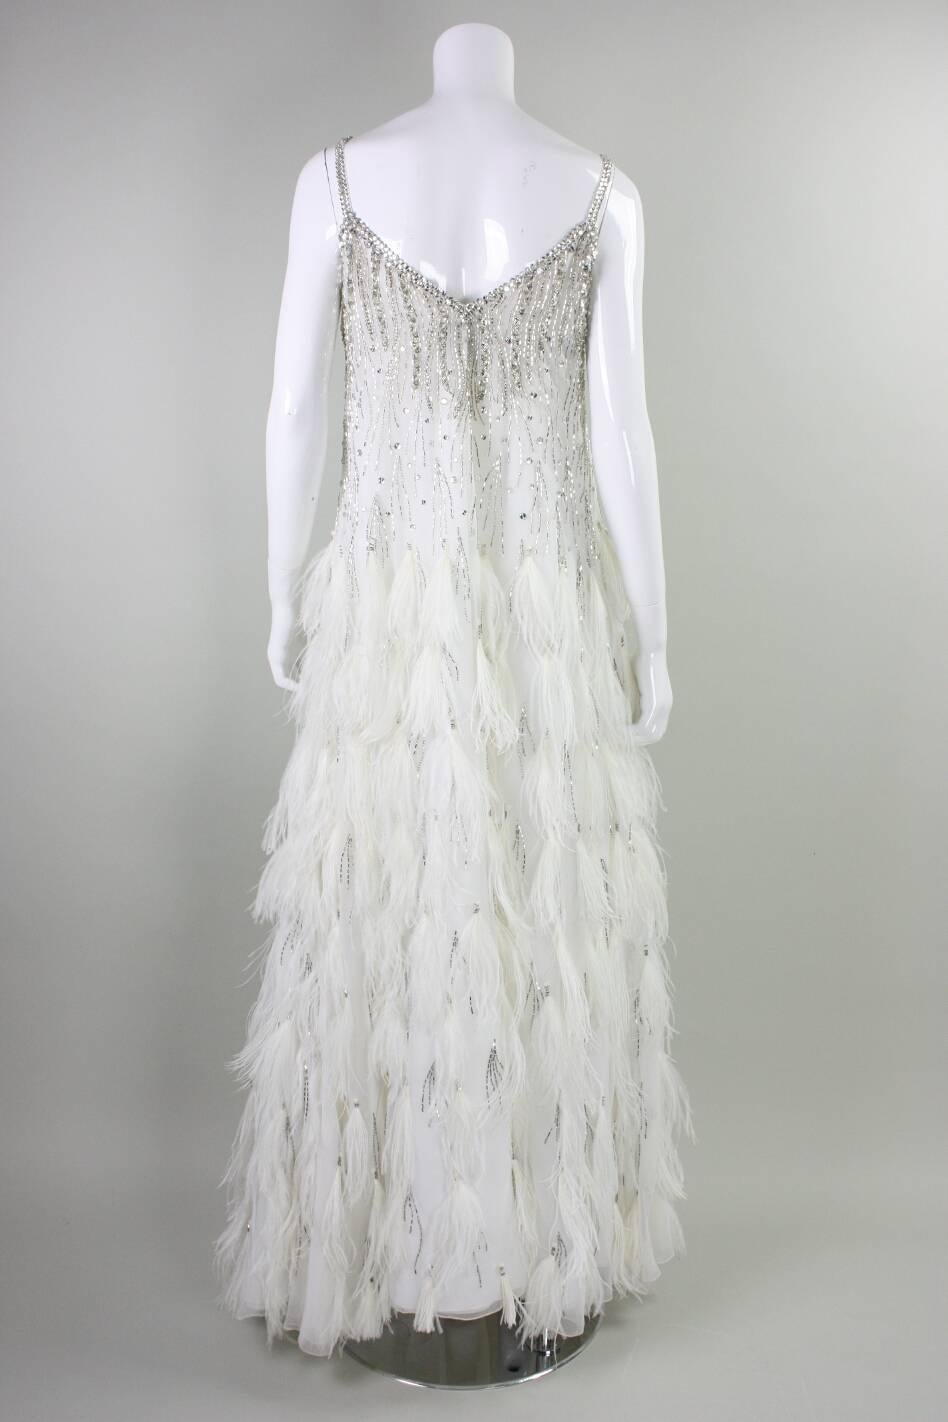 Women's 1980's Ruben Panis White Gown with Beadwork & Feathers